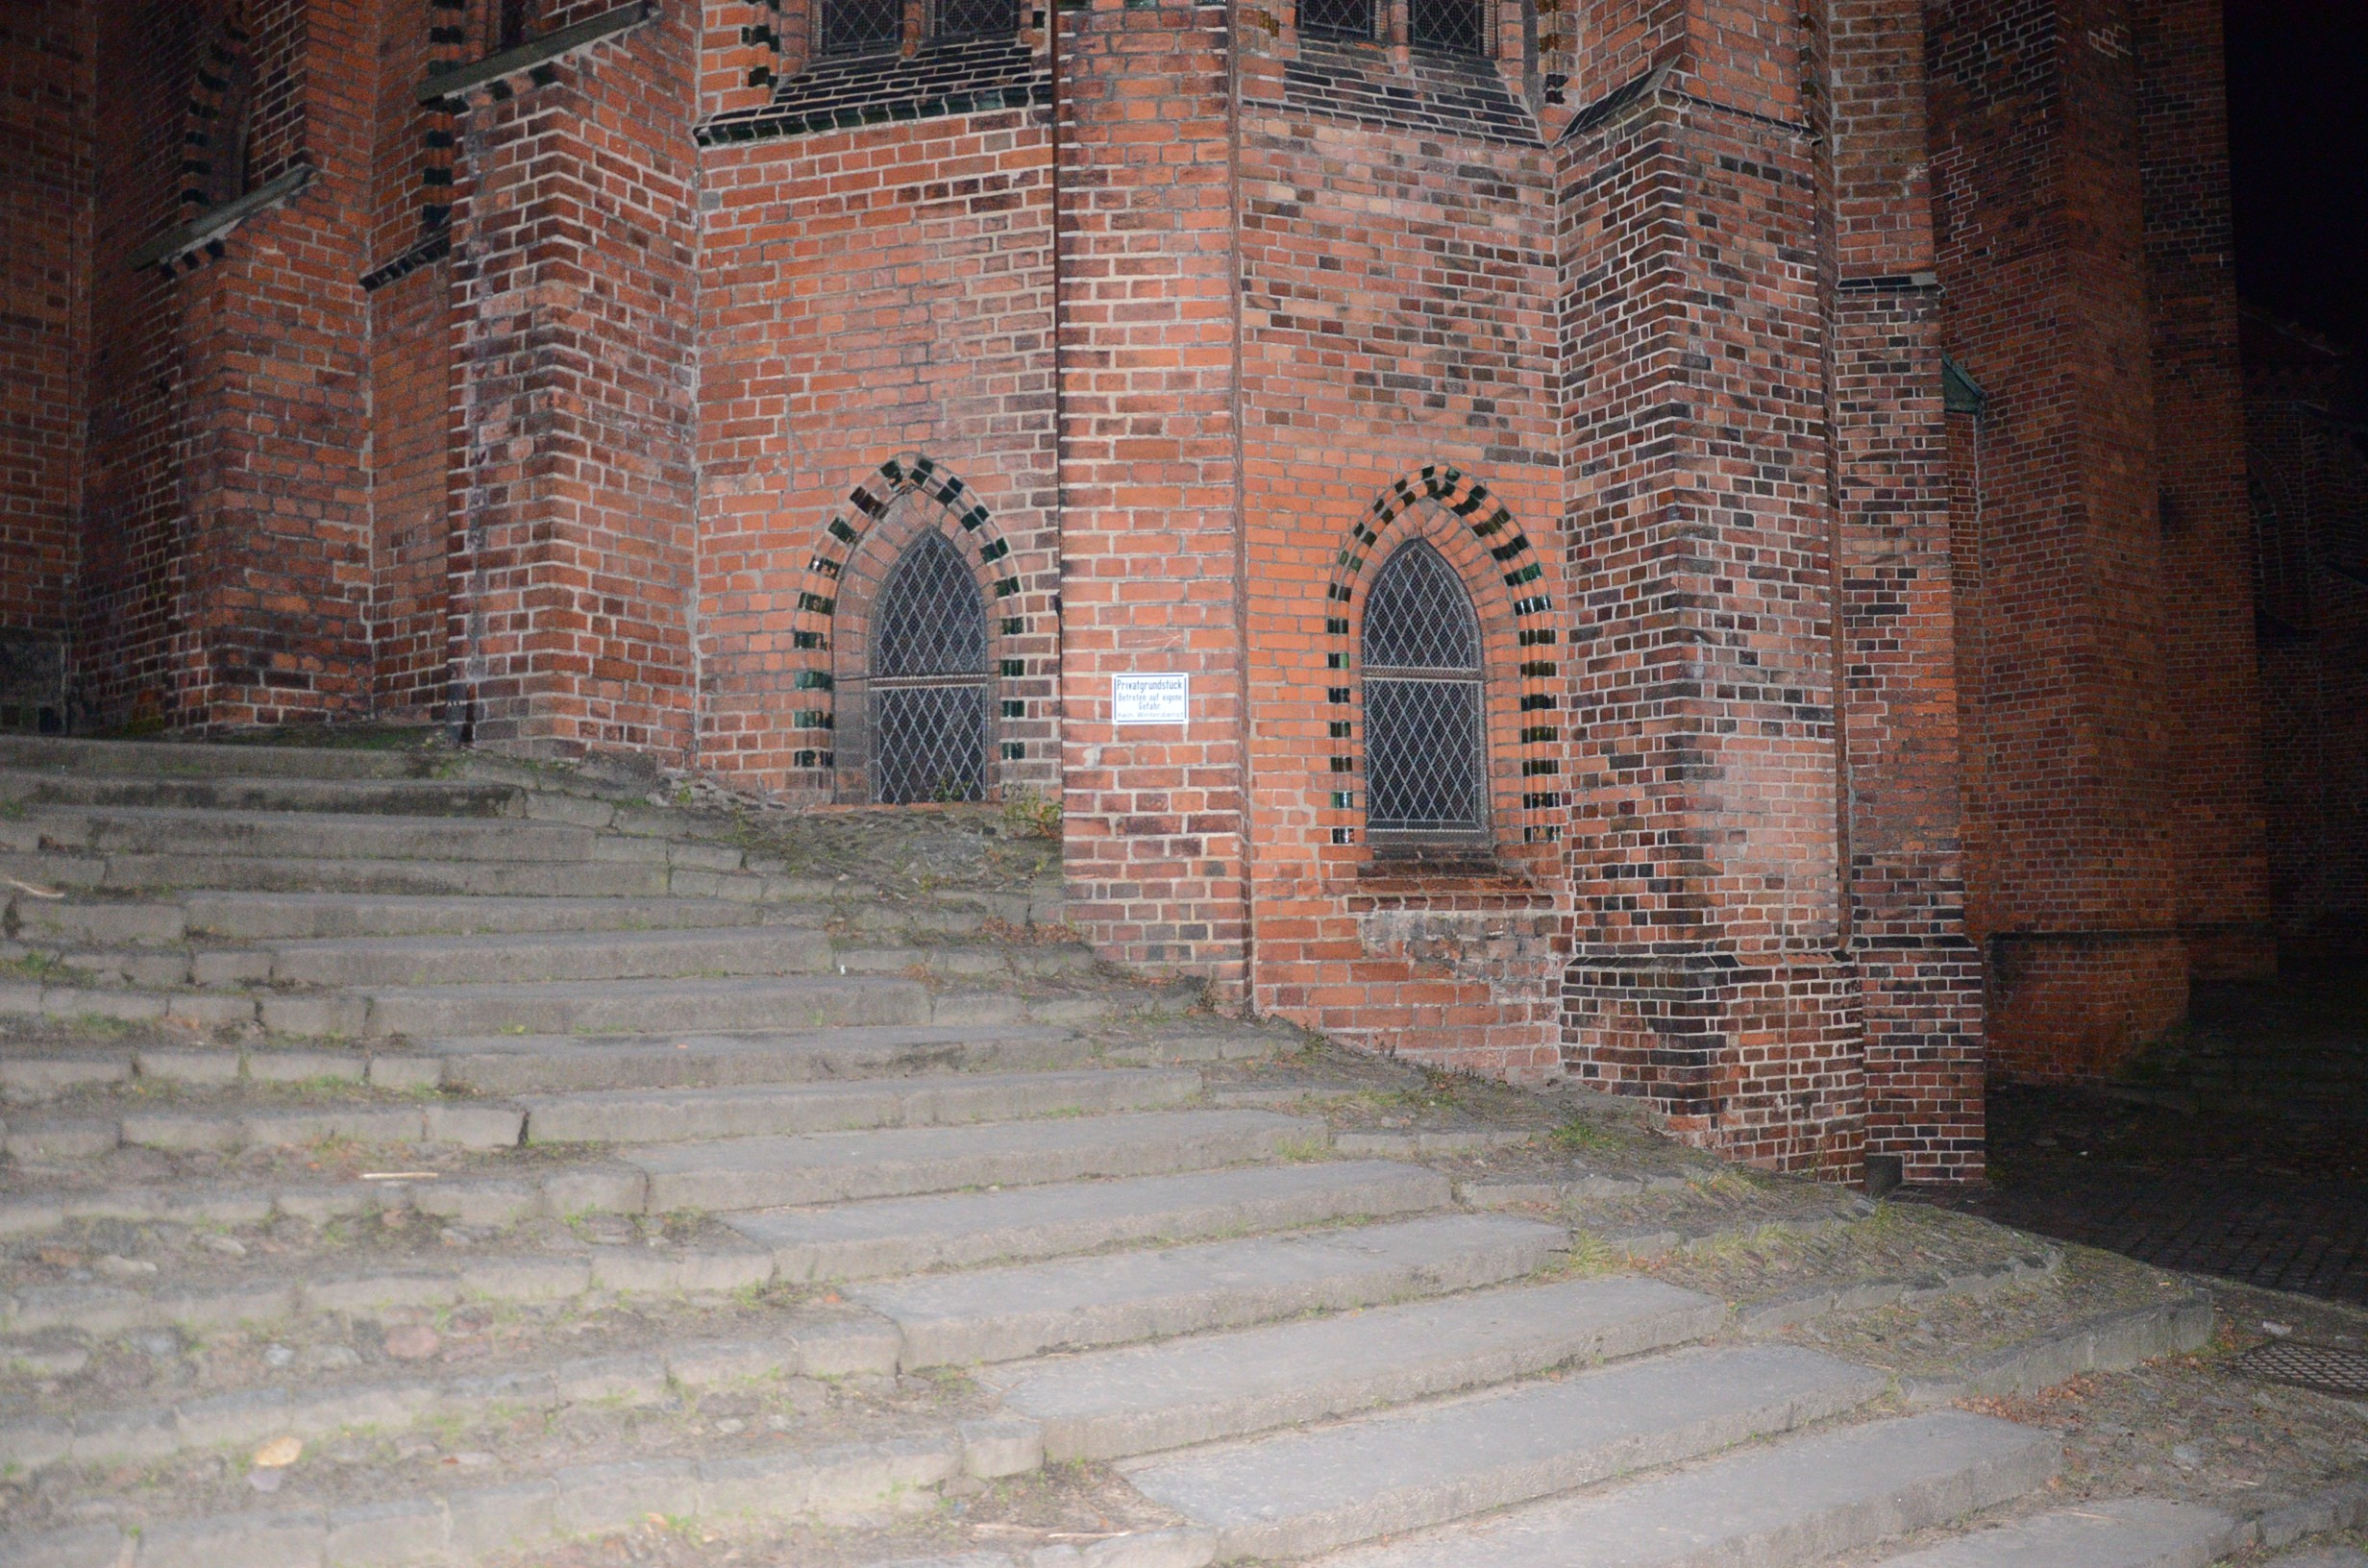 Люнебург.
церковь Св. Михаила (Michaeliskirche). Главное здание присыпано - 2